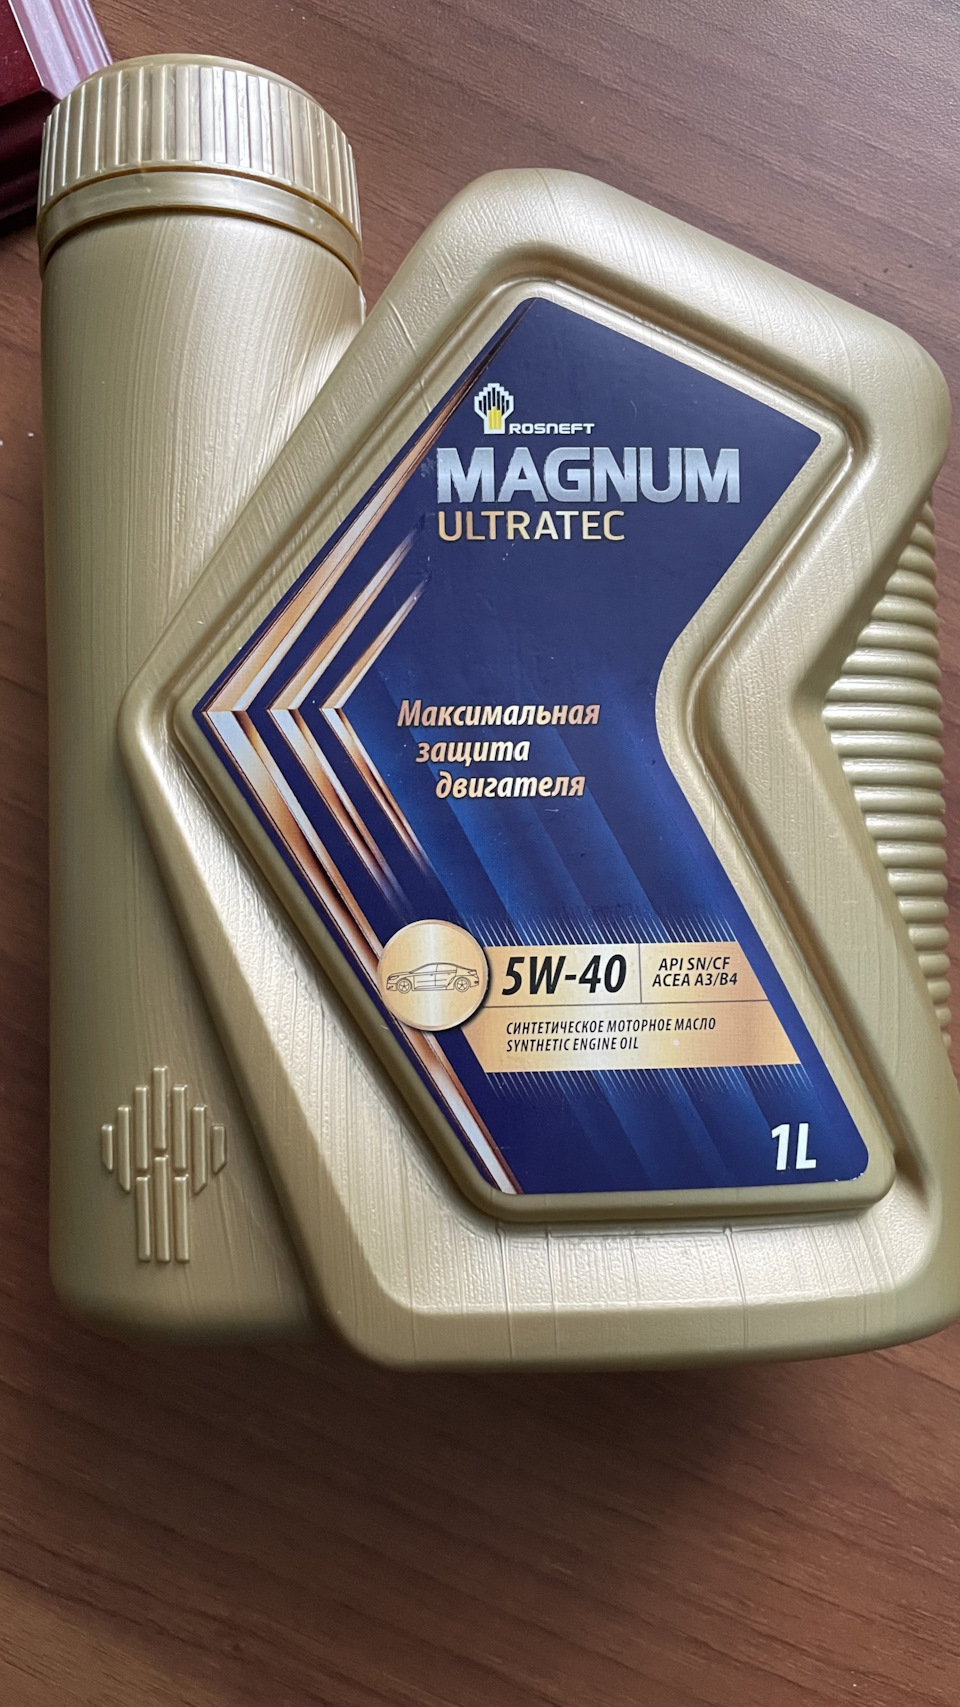 Rosneft Magnum Ultratec 5w40 реклама. Rosneft Magnum Ultratec. Упаковка моторного масла Magnum Ultratec. Справка от производитель моторного масла Magnum Ultratec. Купить масло роснефть ультратек